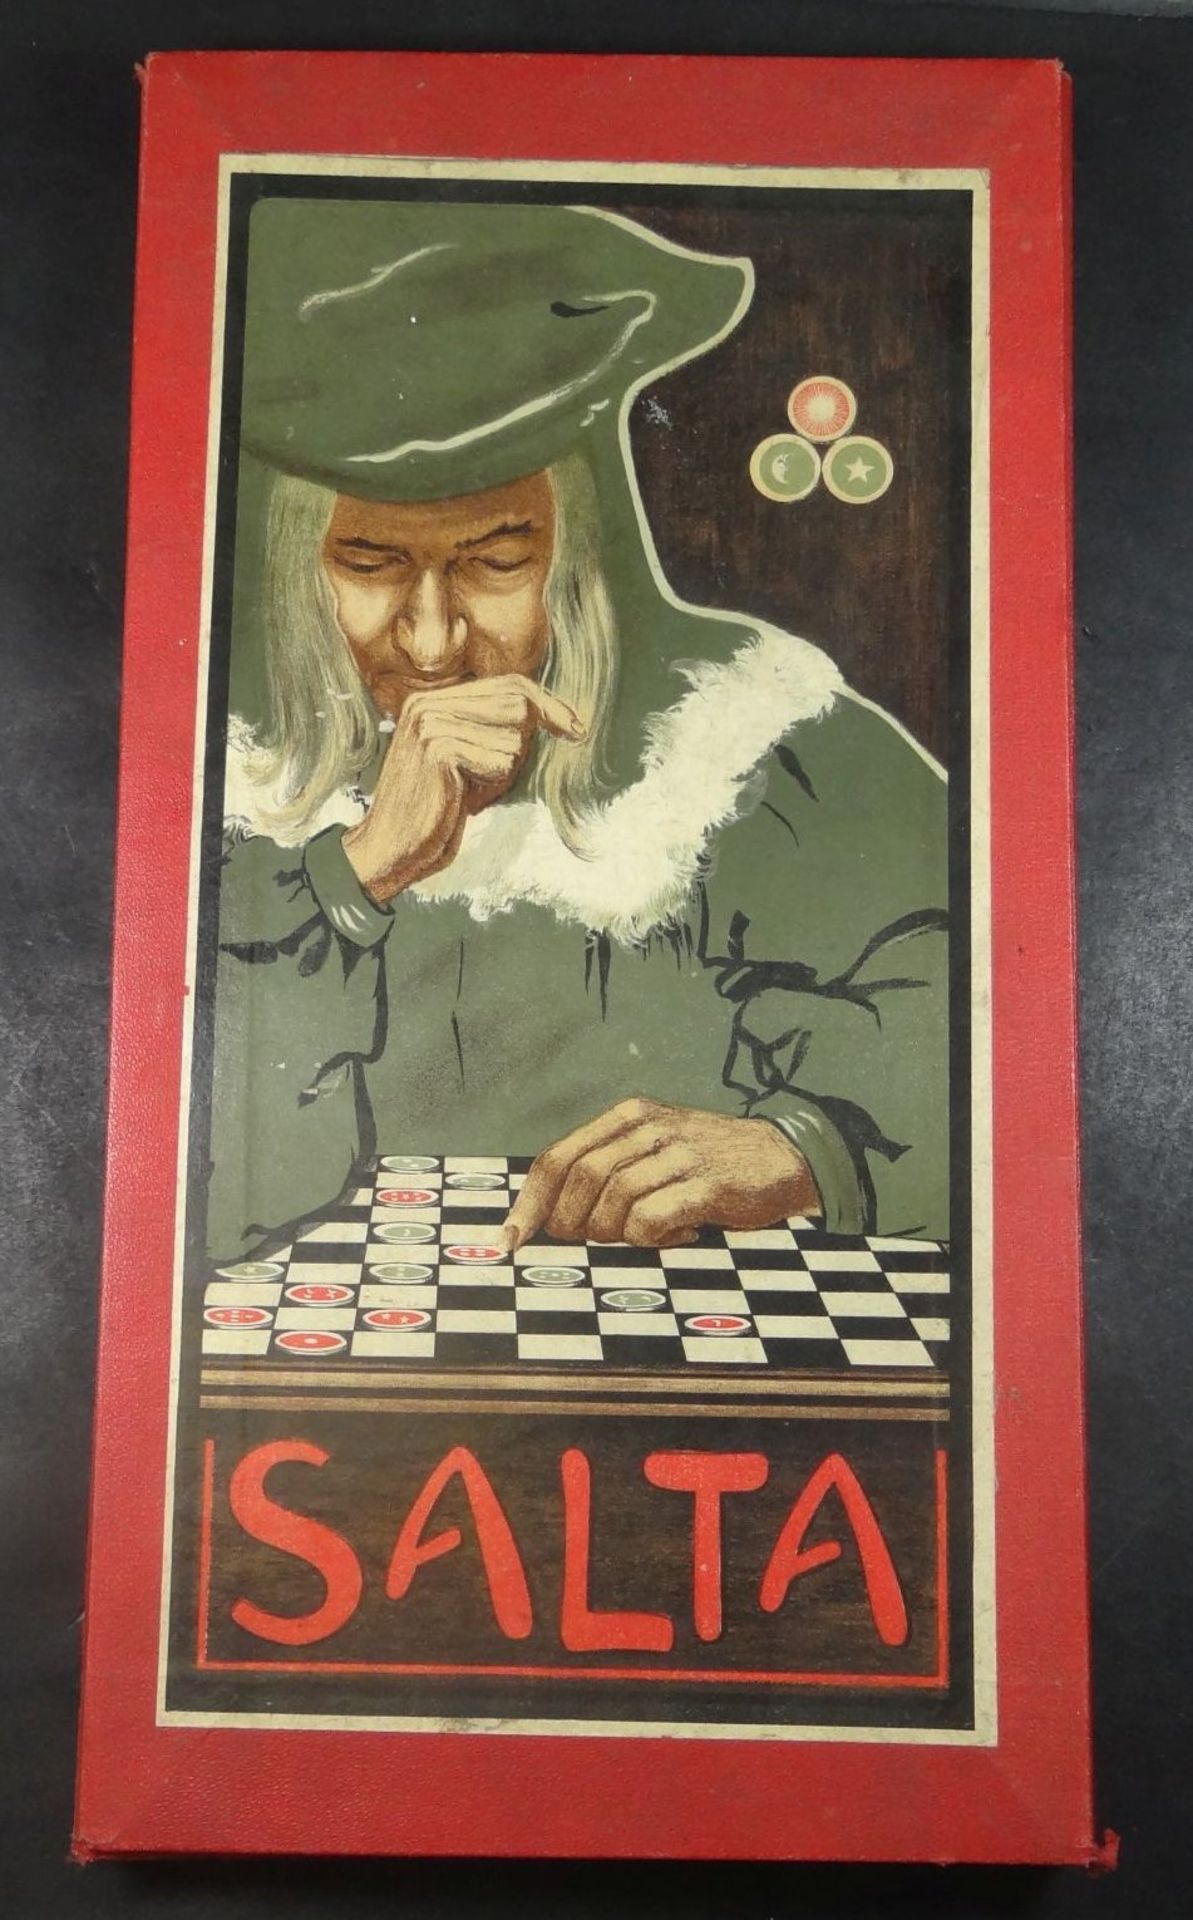 "Salta" Spiel in orig. Karton, Salta erfreute sich um 1900 sehr großer Beliebtheit: auf der